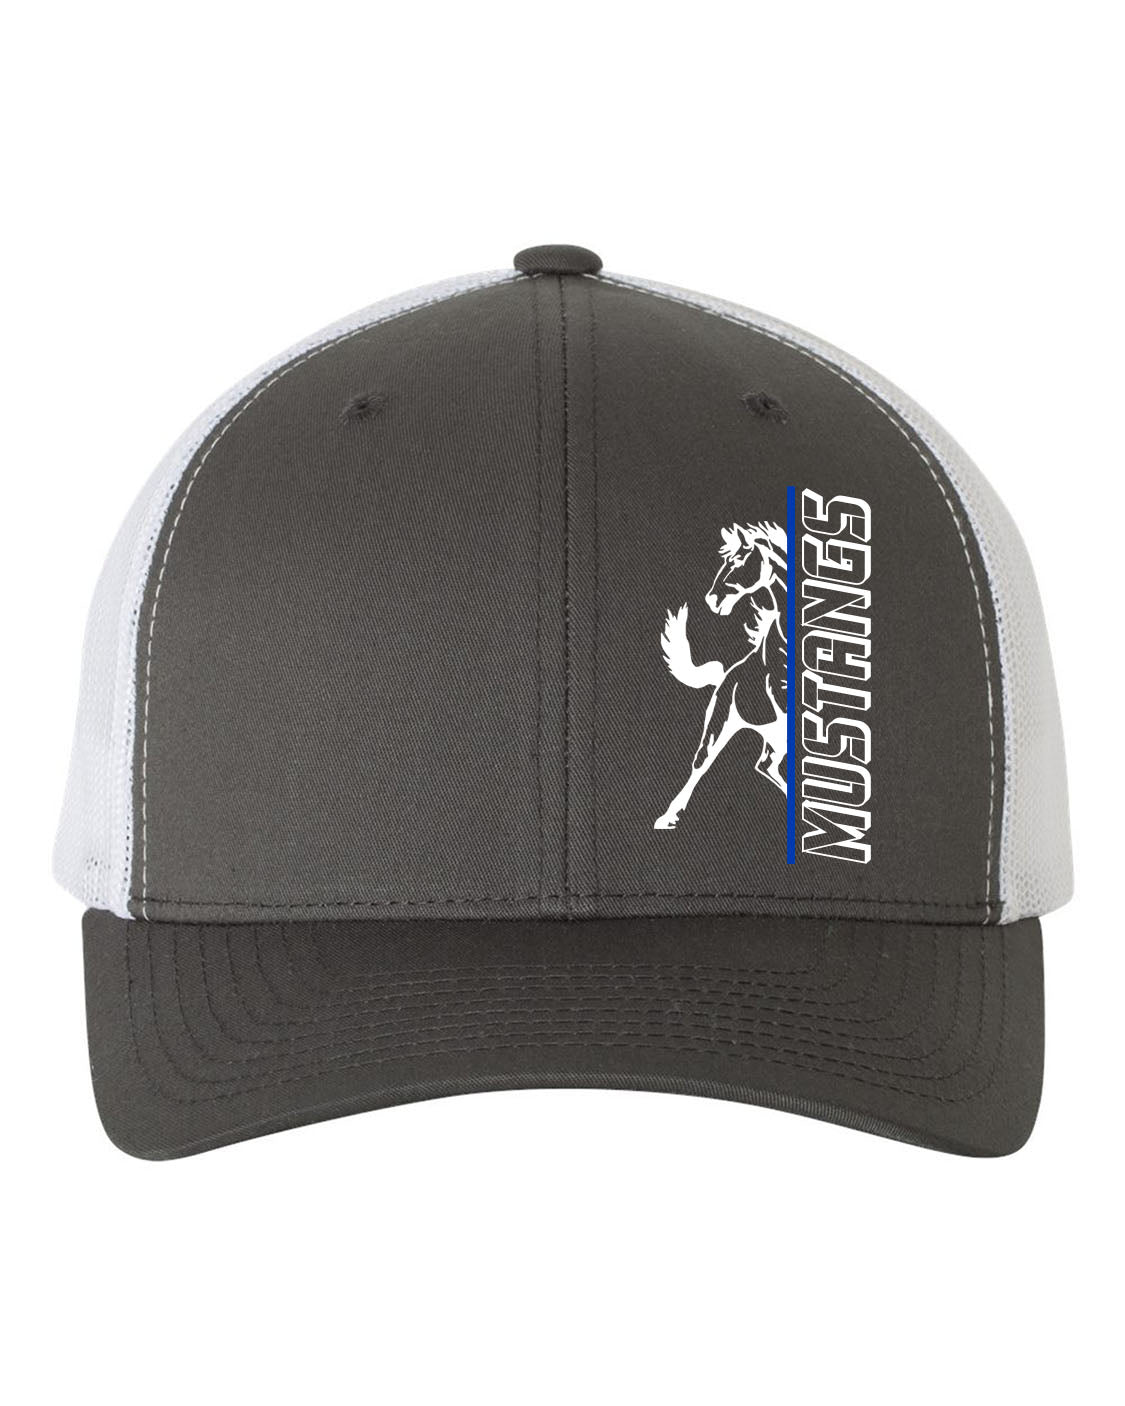 Frelinghuysen Design 14 Trucker Hat